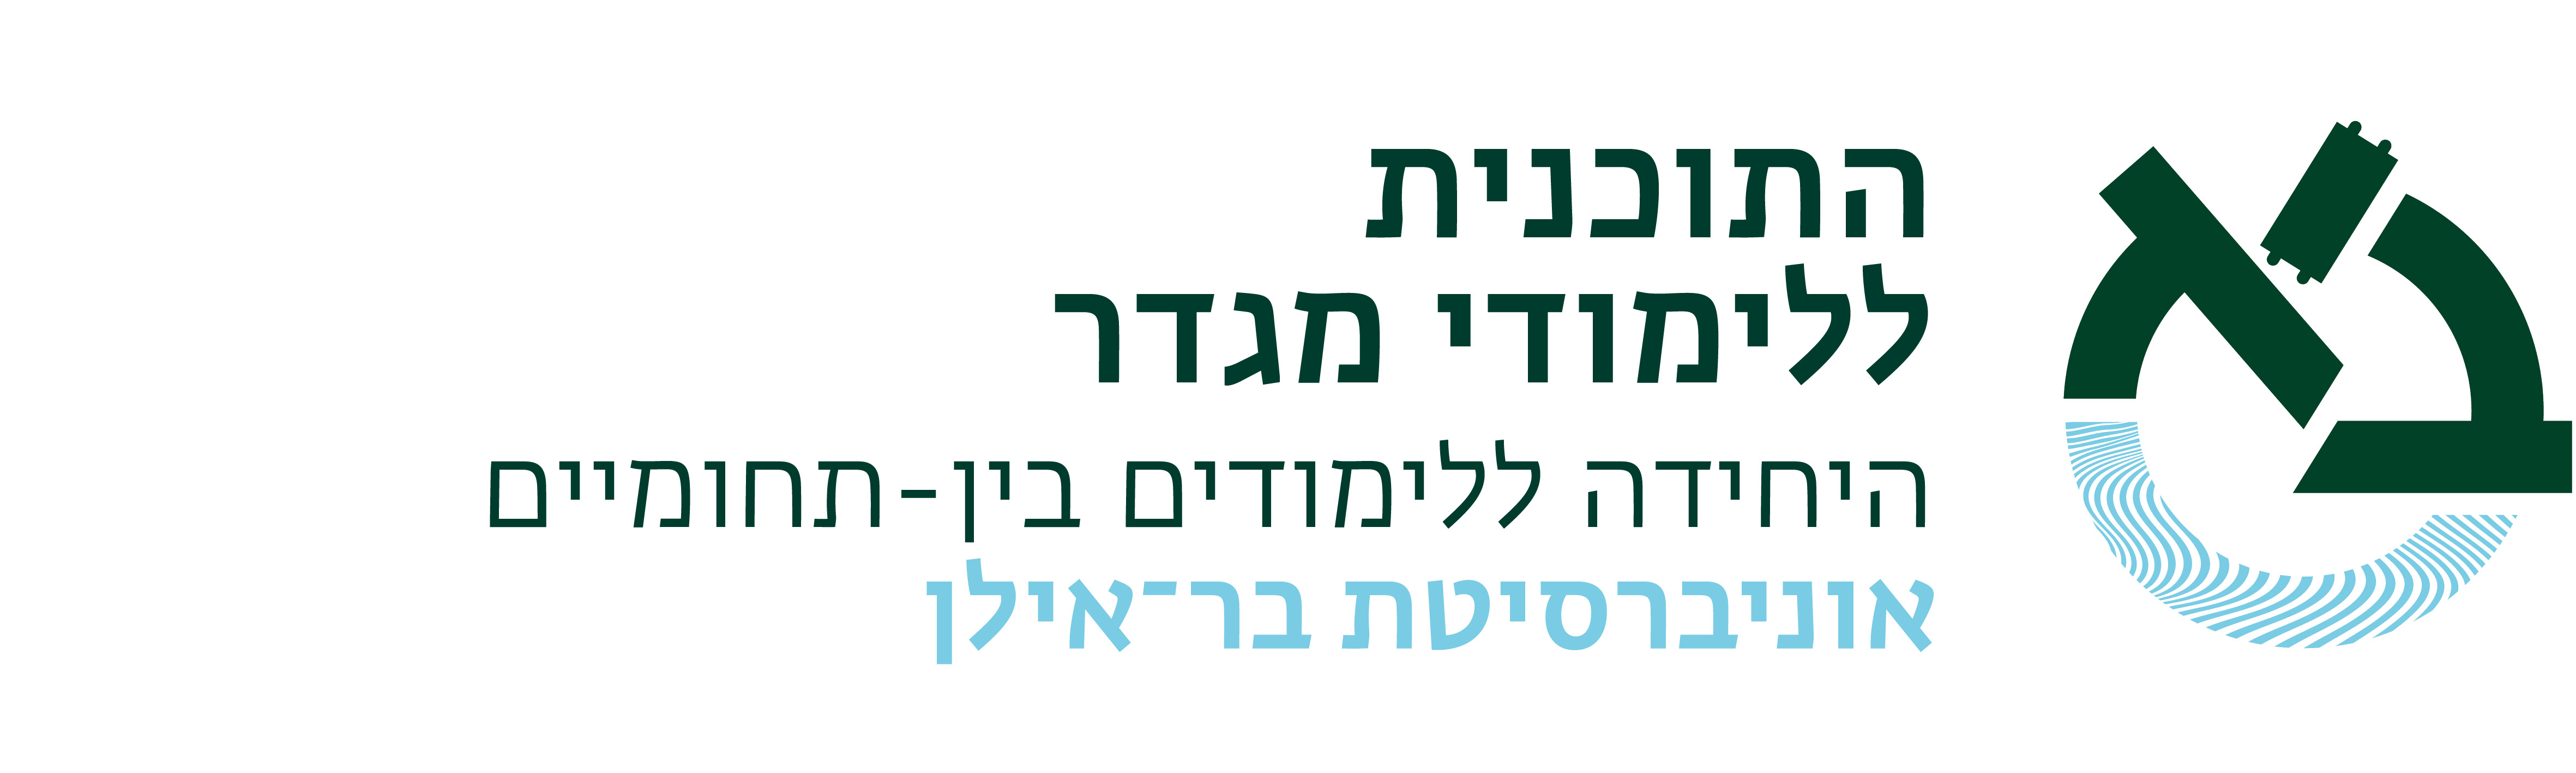 הלוגו של ארגון התכנית ללימודי מגדר, אוניברסיטת בר אילן